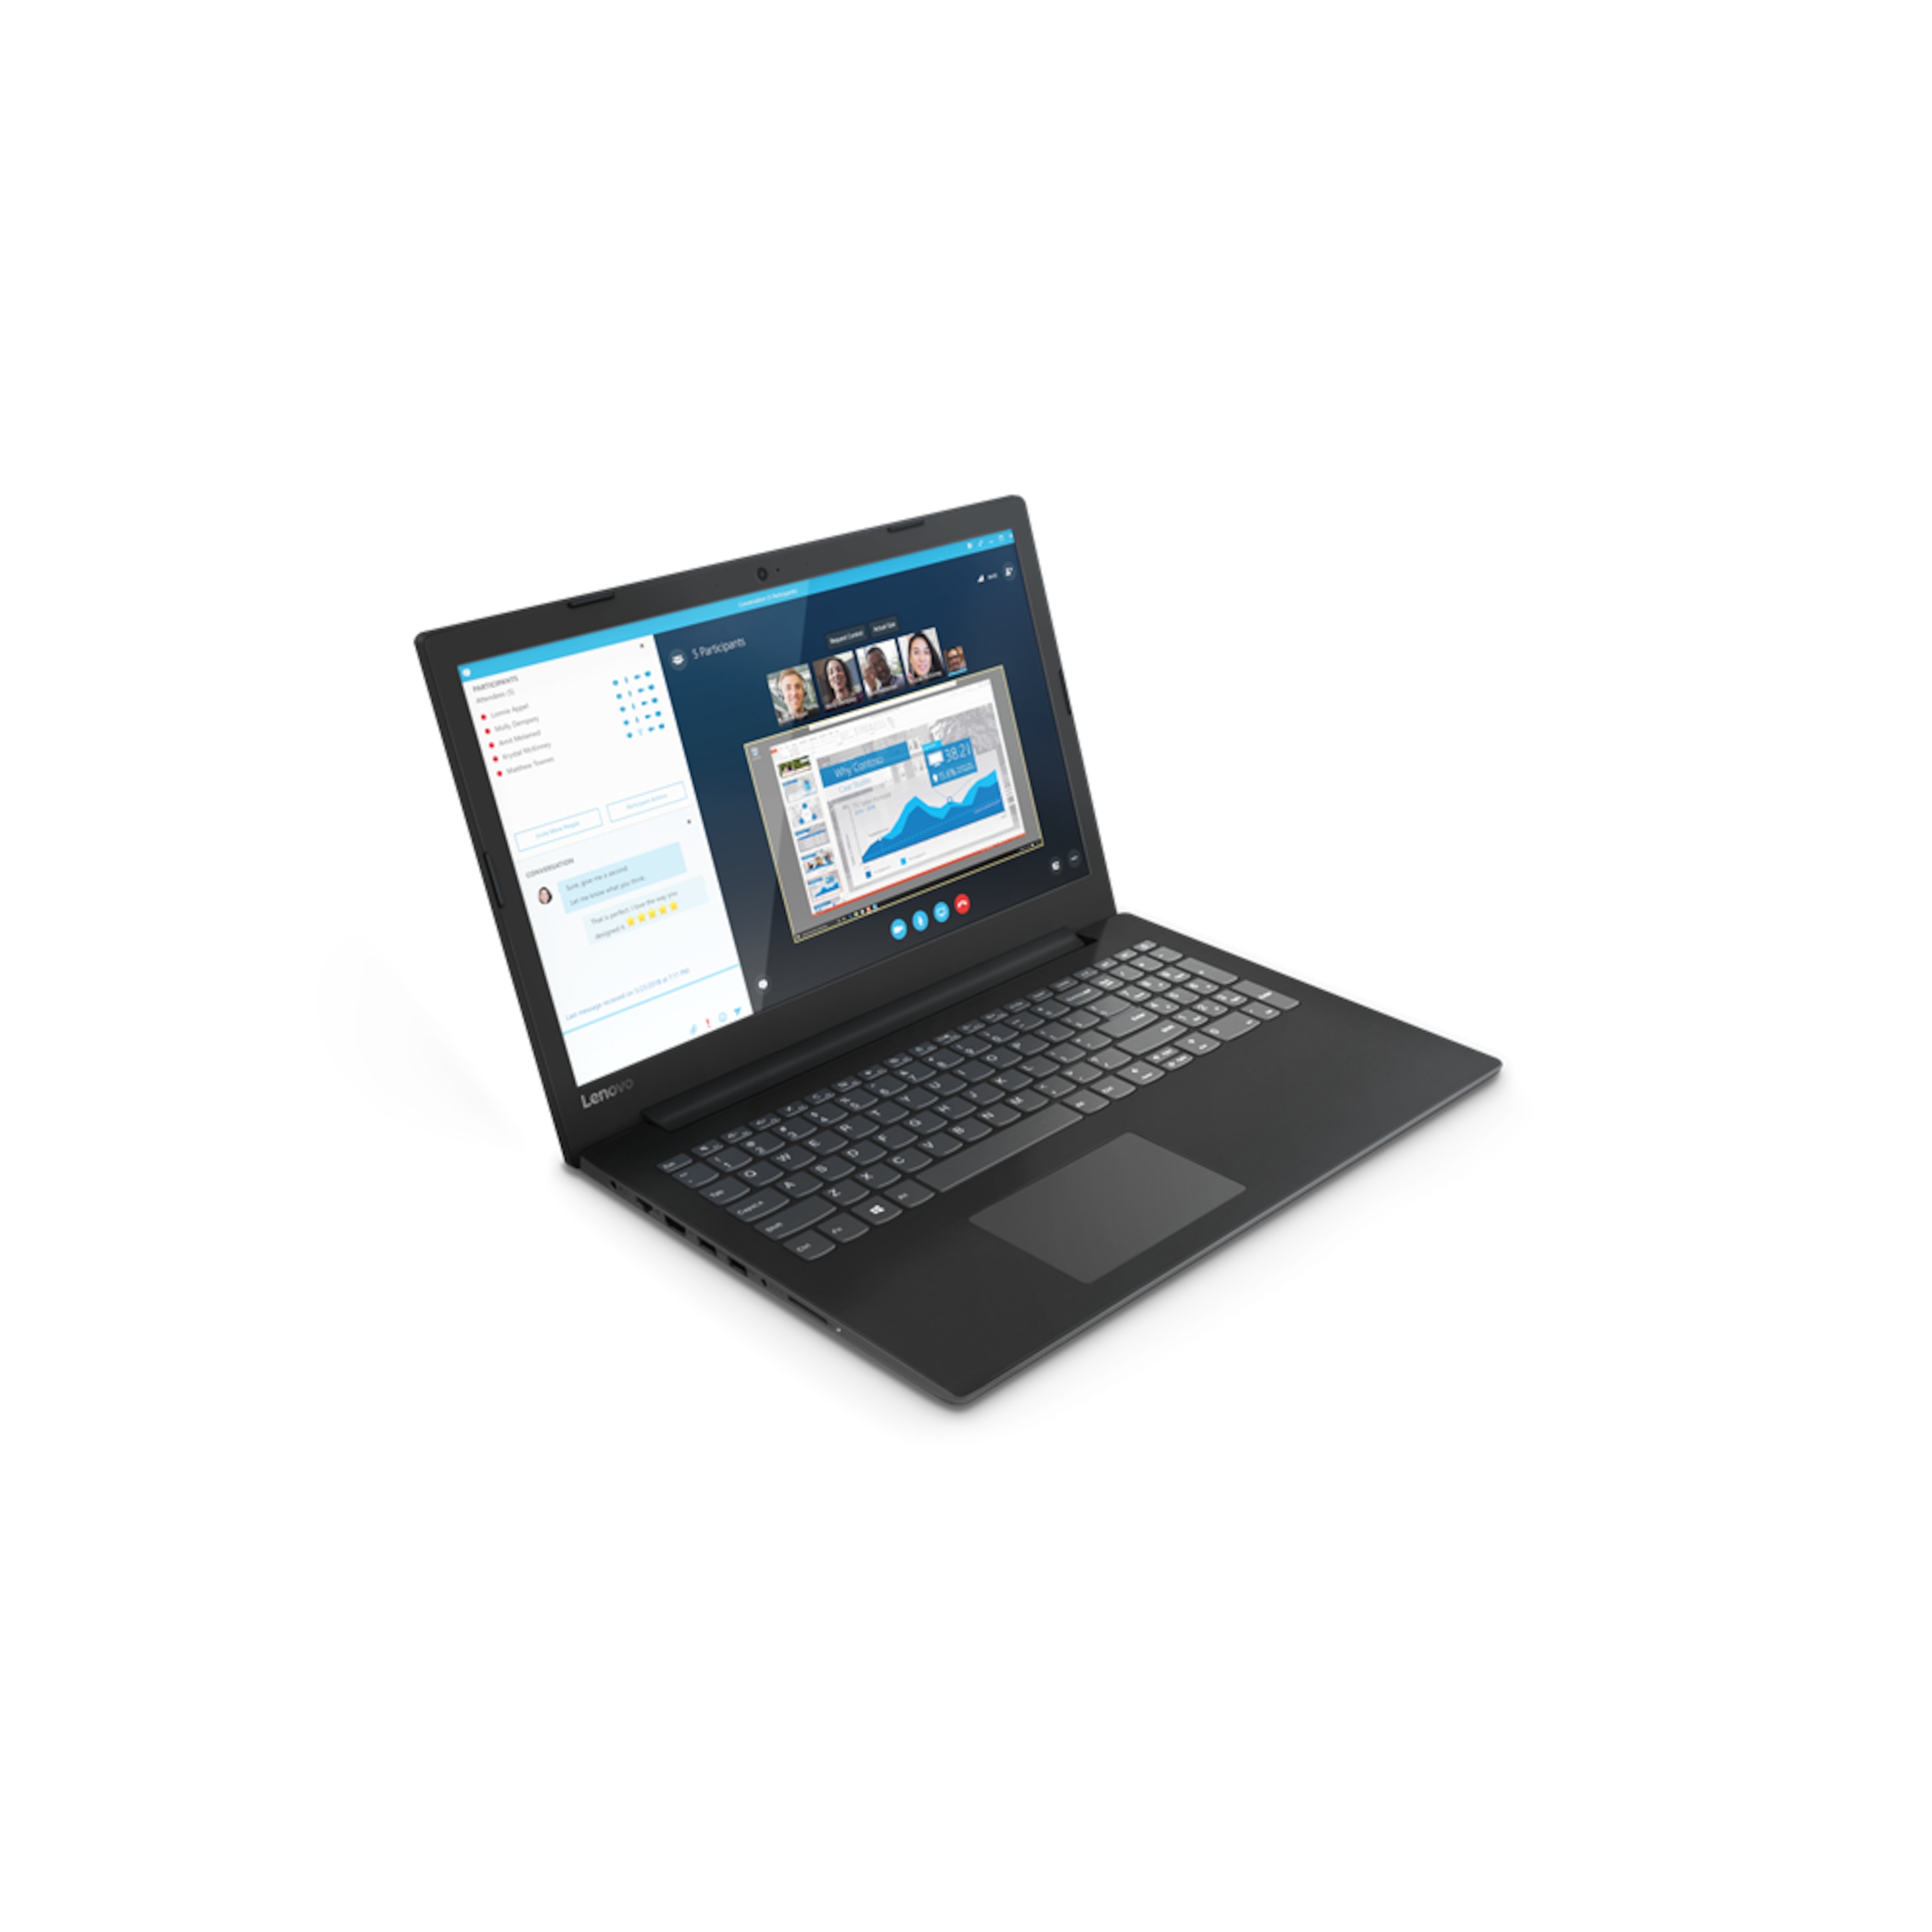 LENOVO IdeaPad™ V145-15AST, AMD A4-9125, ohne OS, 39,6 cm (15,6") FHD Display, 128 GB SSD, 4 GB RAM, Notebook (B-Ware)